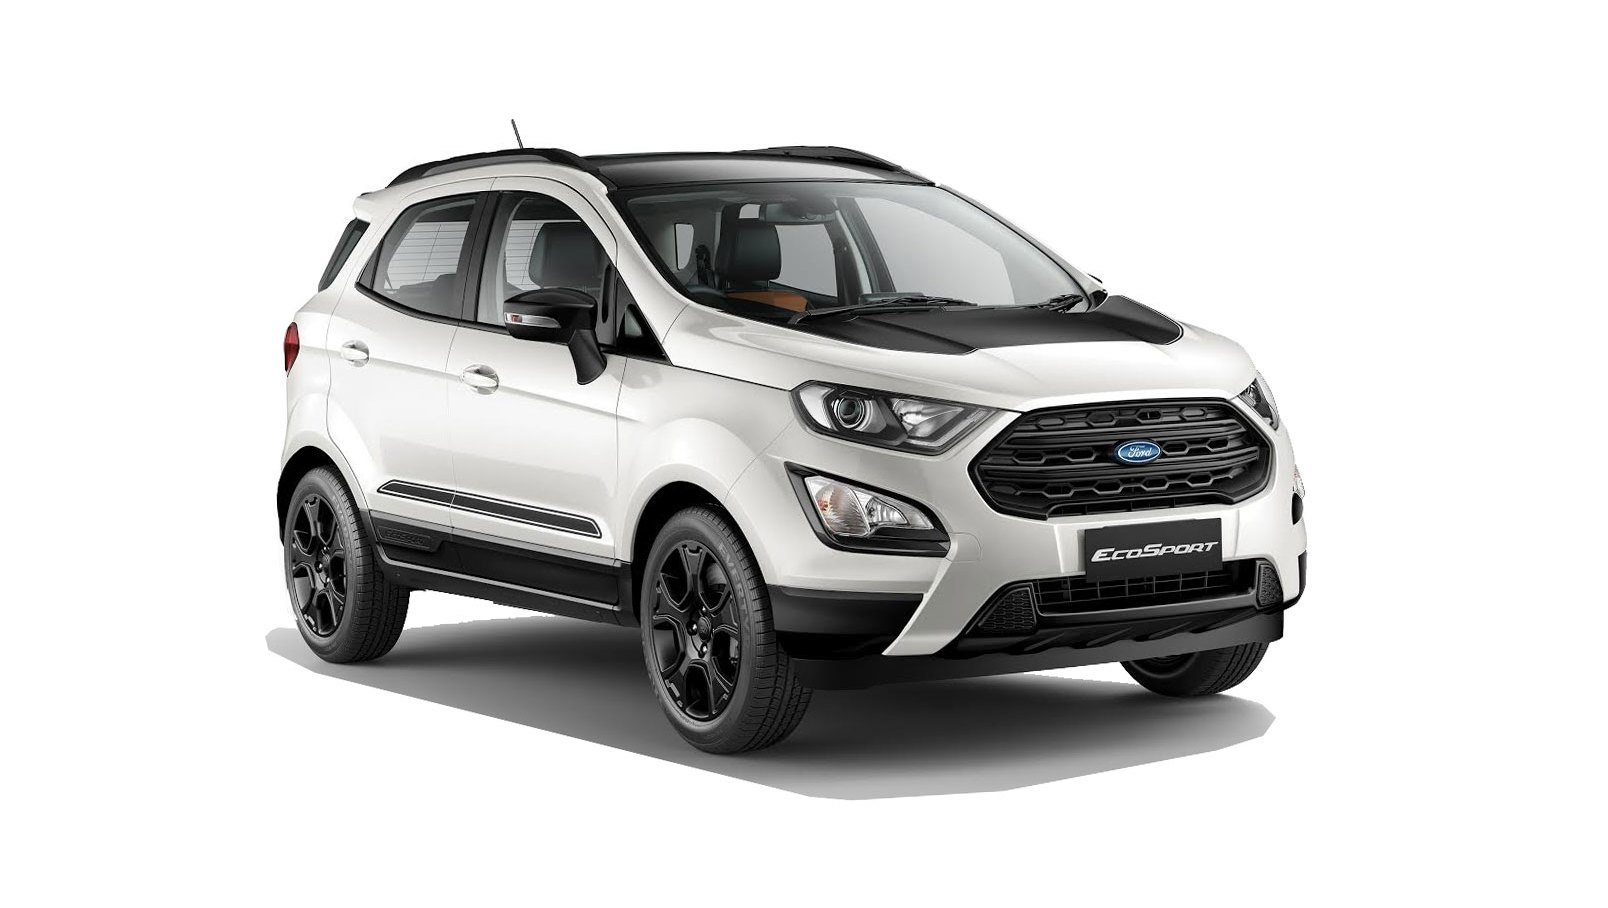 Thuê xe tự lái Ford Ecosport 2019 tại Đà Nẵng